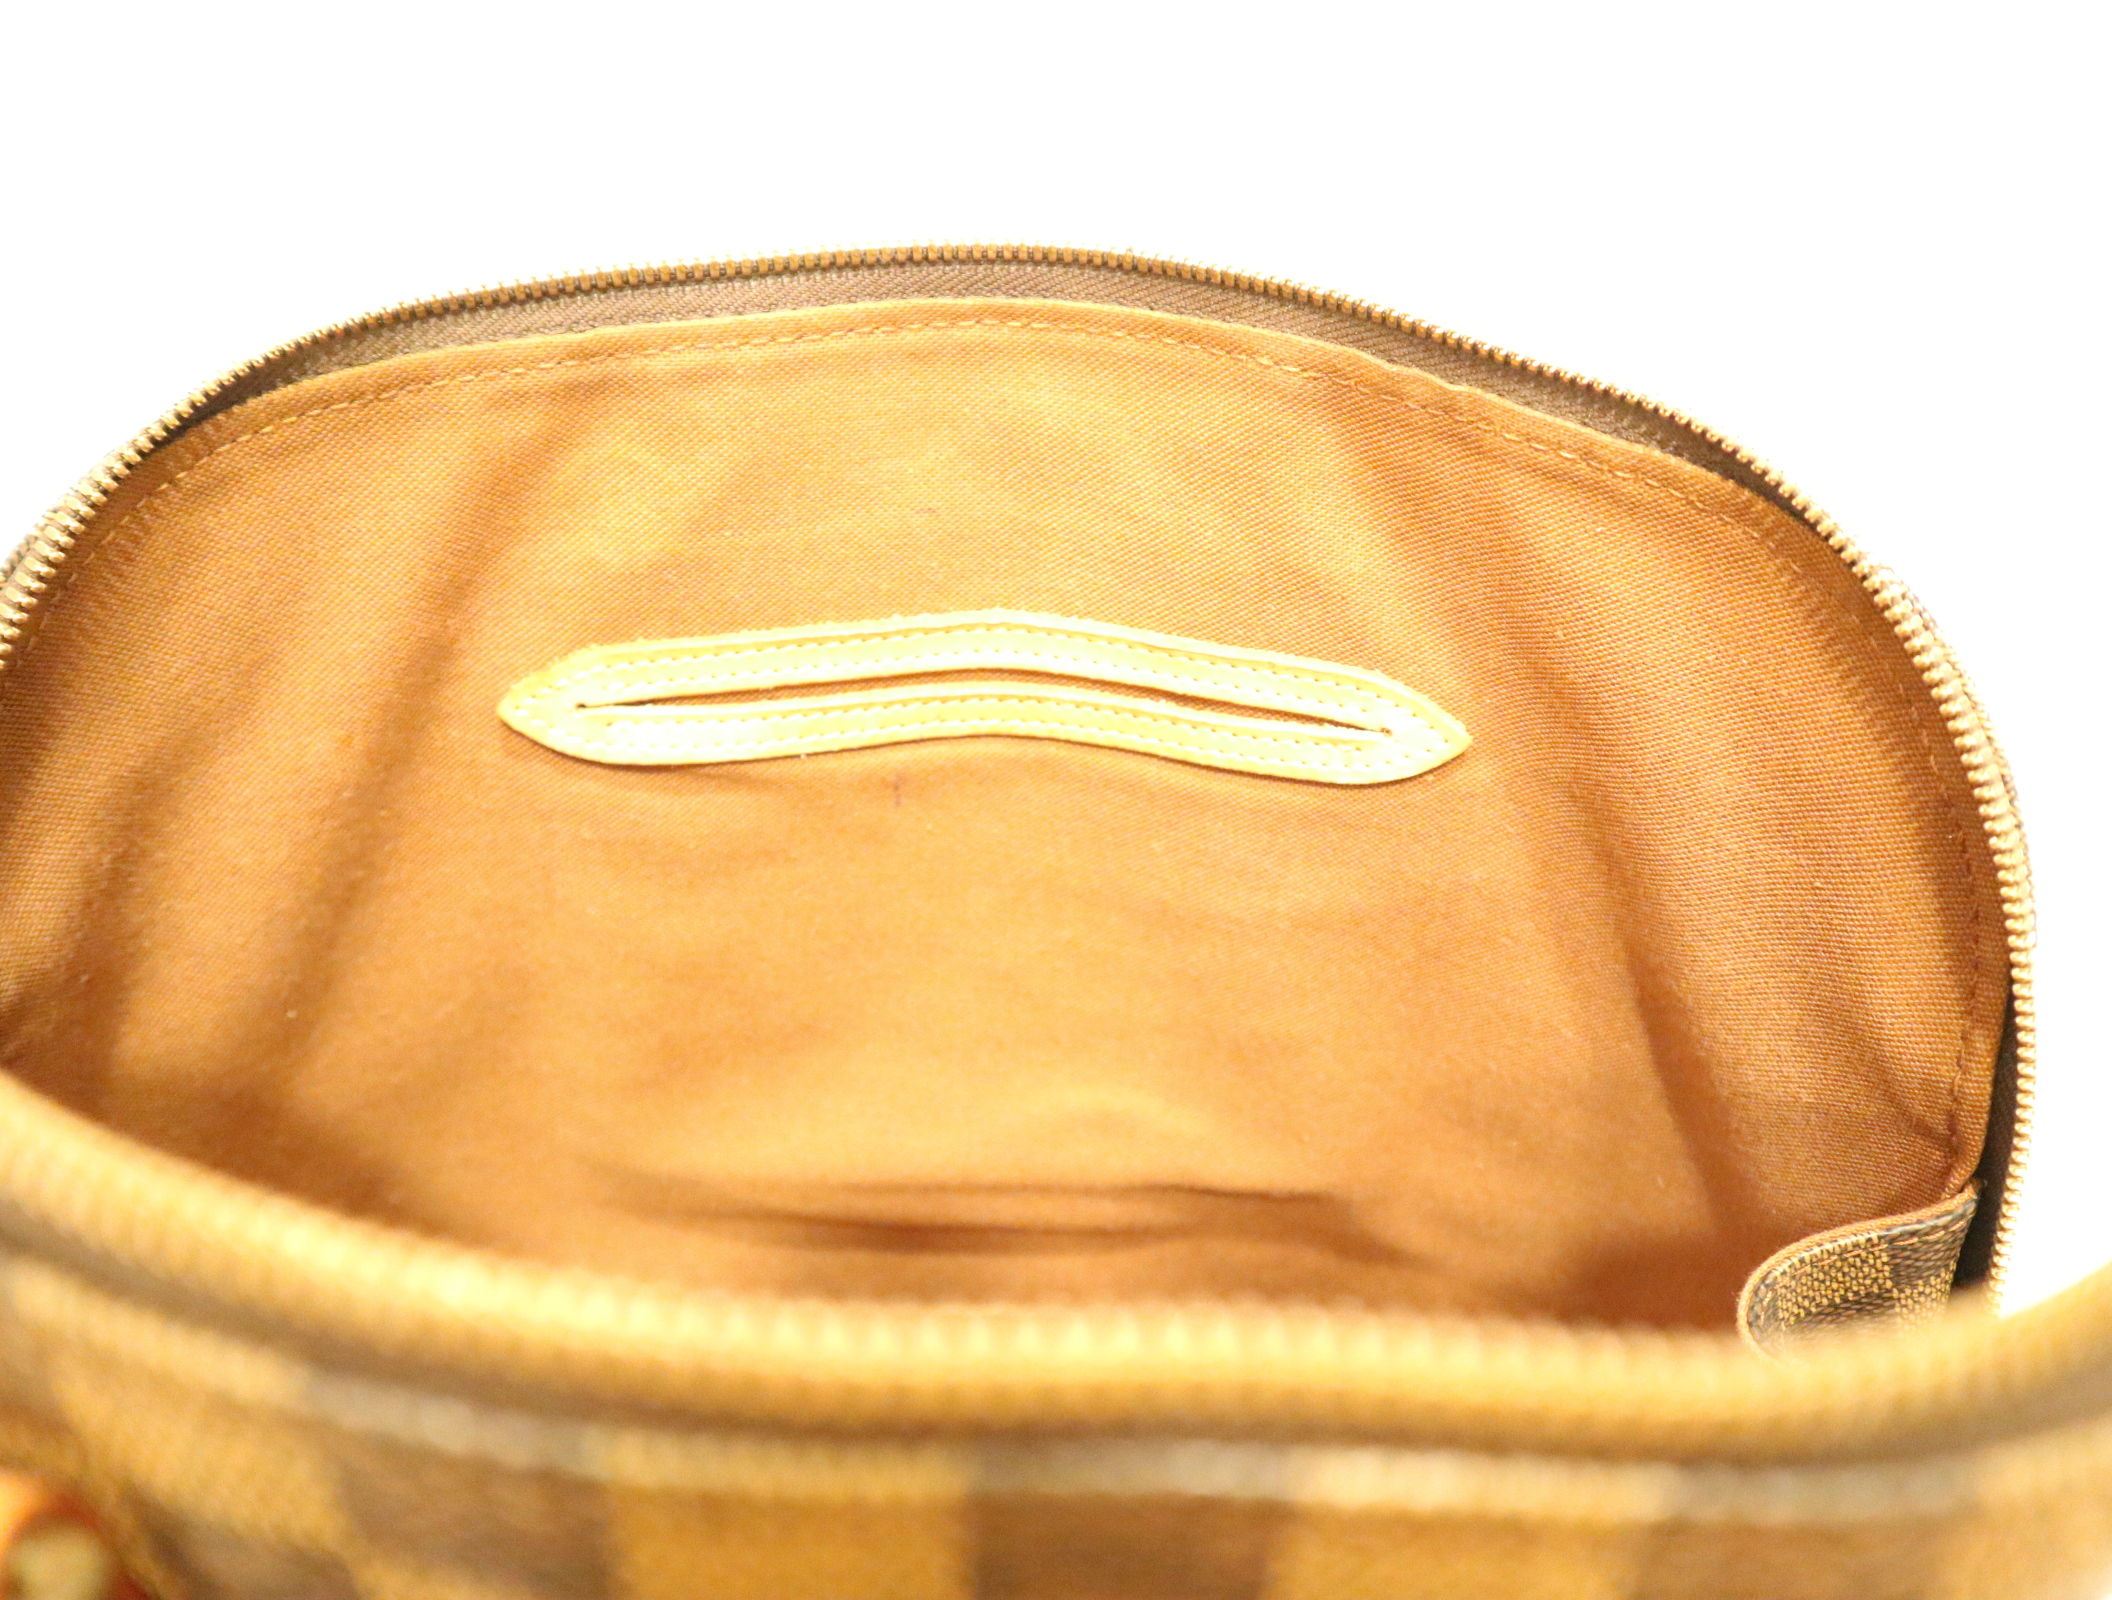 Damen Louis Vuitton Tote Taschen ab 533 €